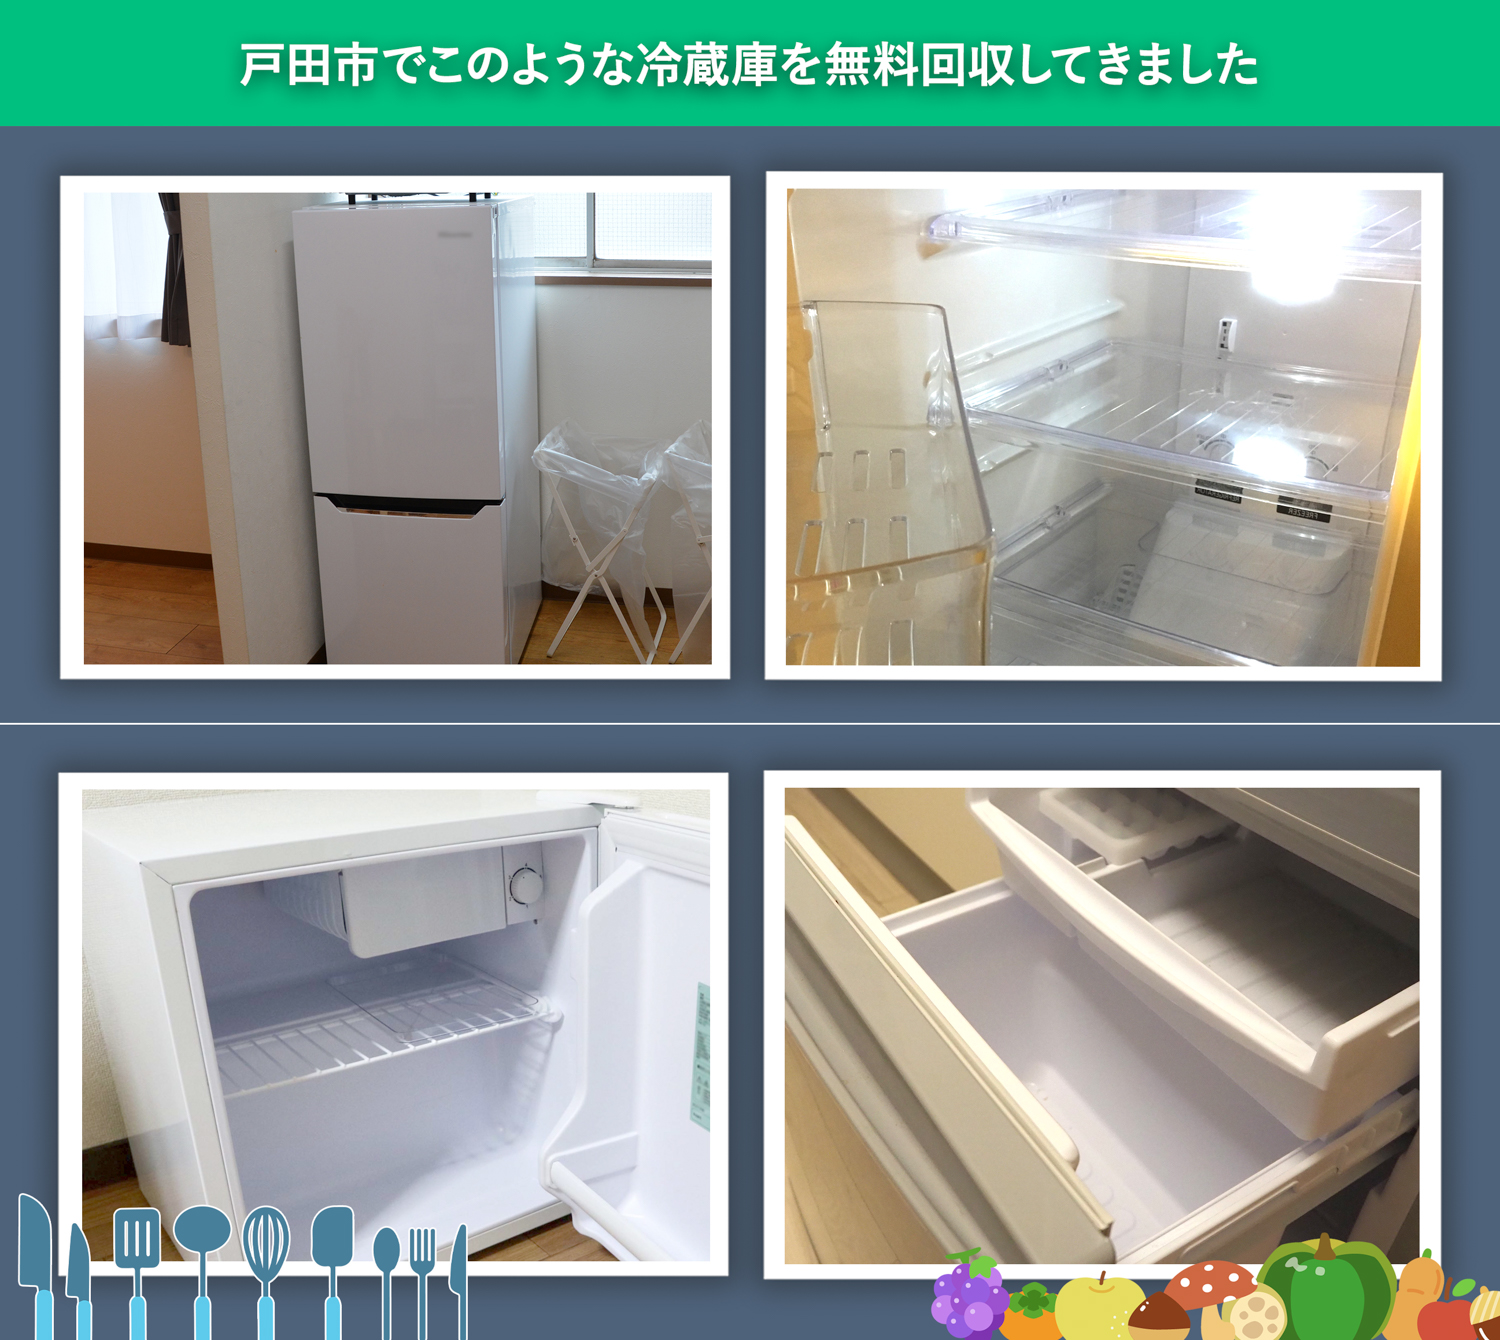 戸田市でこのような冷蔵庫を無料回収してきました。